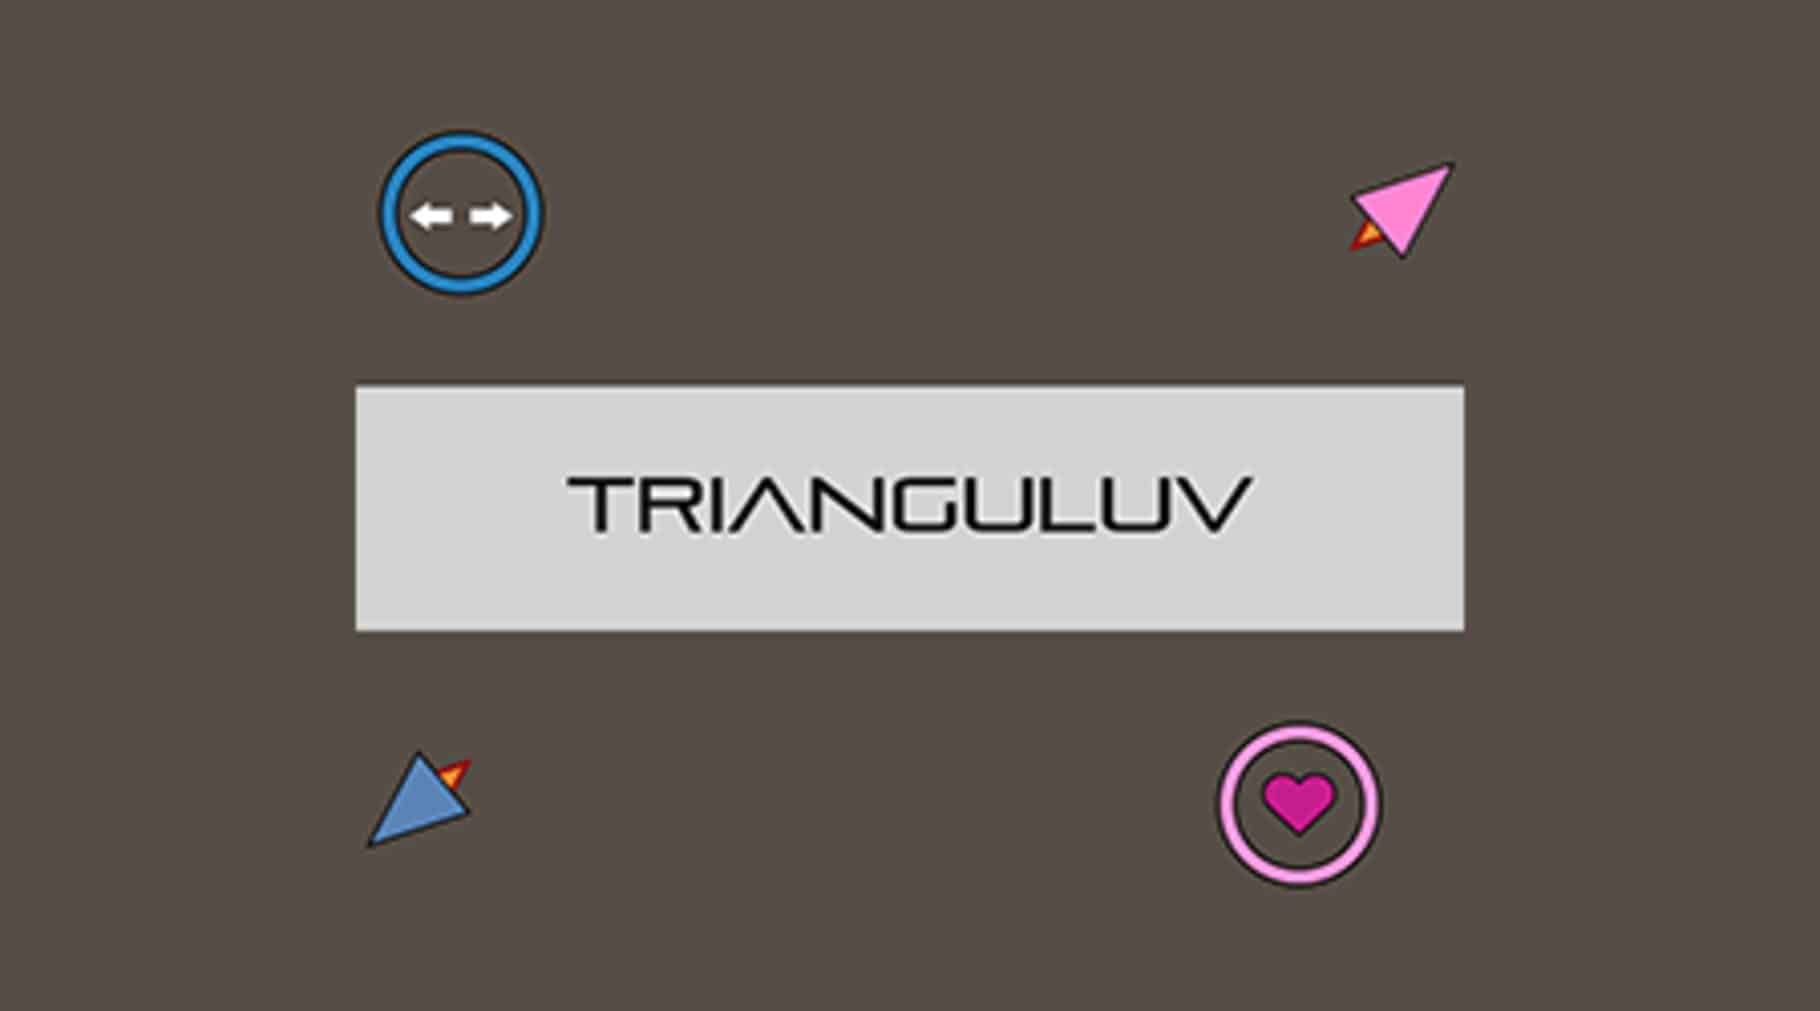 Trianguluv